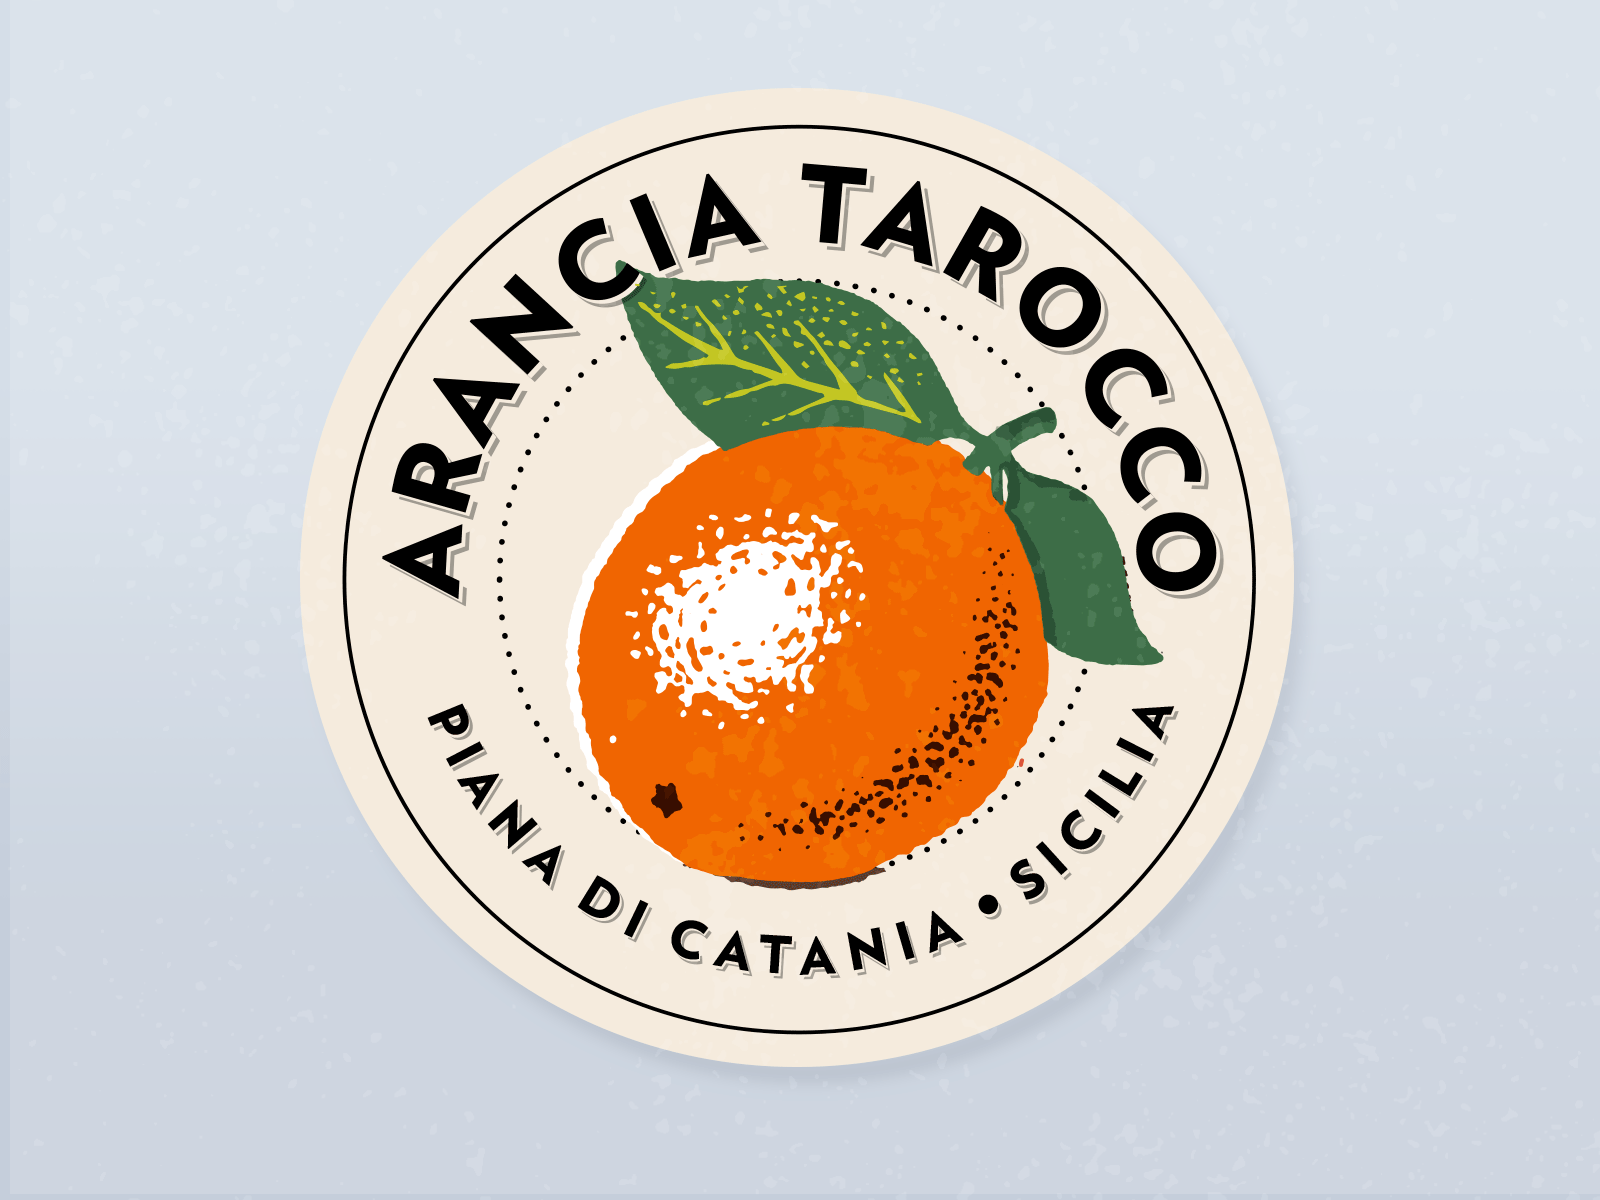 Tarocco orange